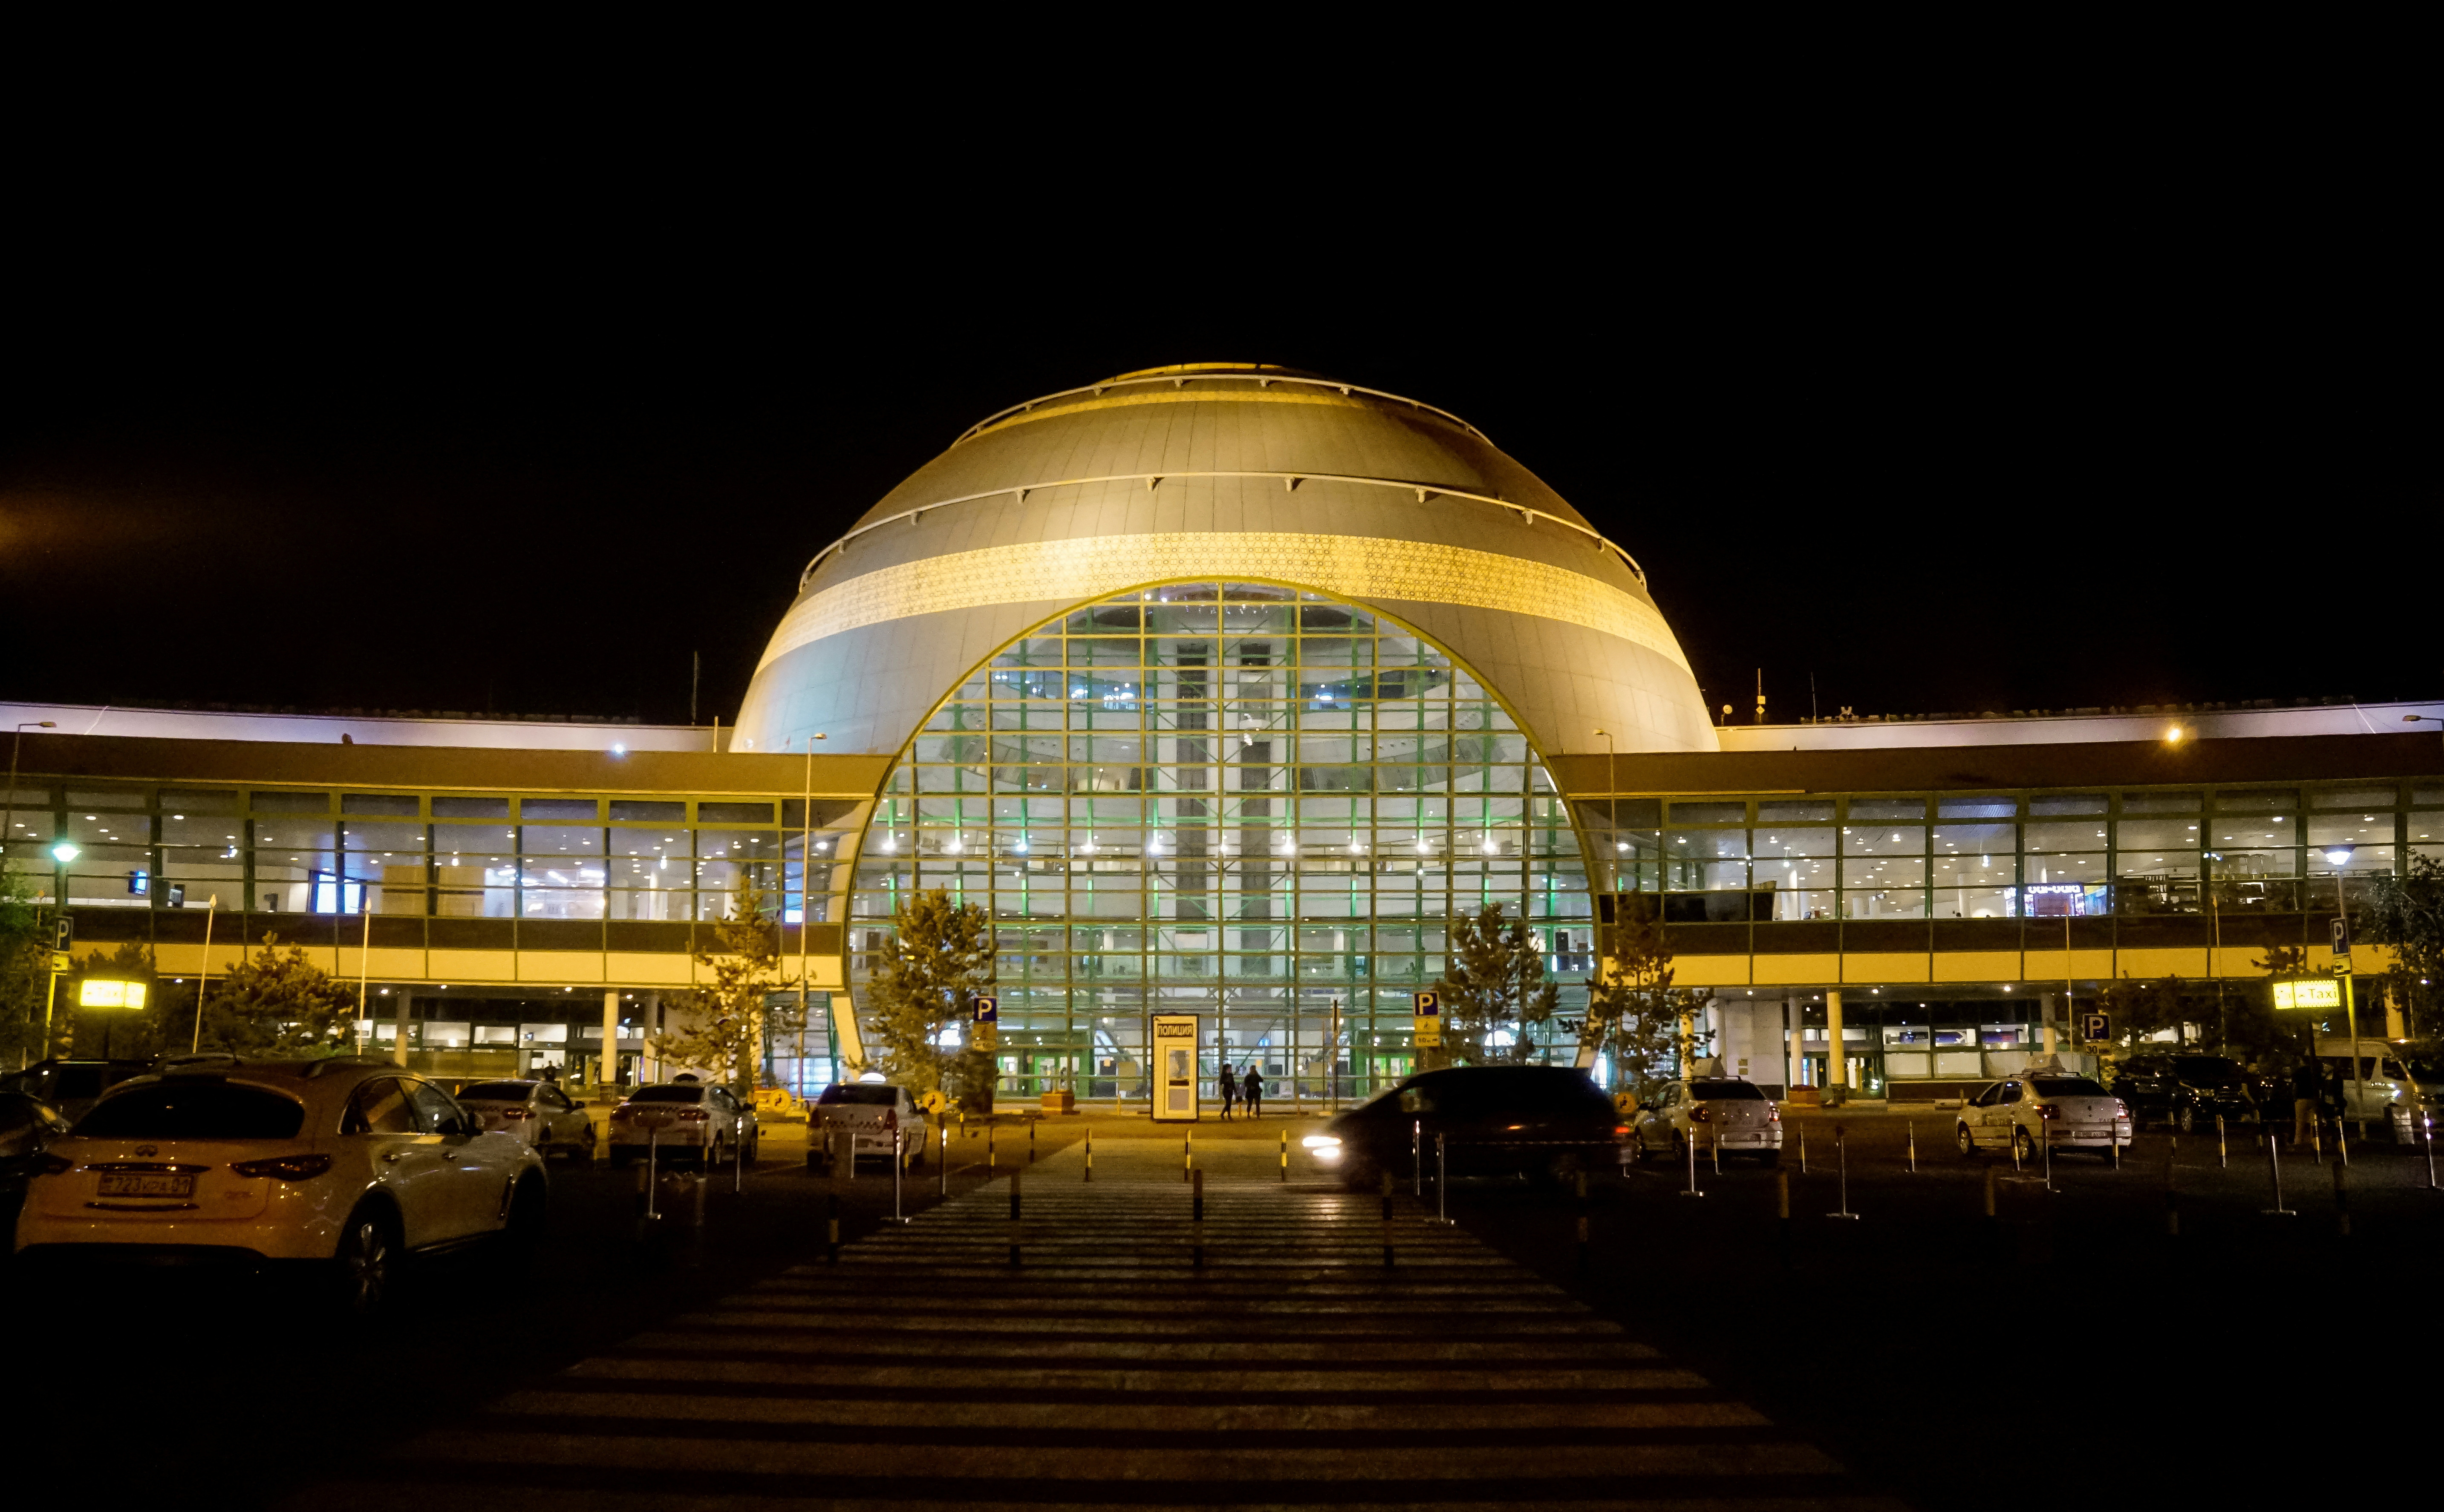 A general view of the Astana International airport, Kazakhstan